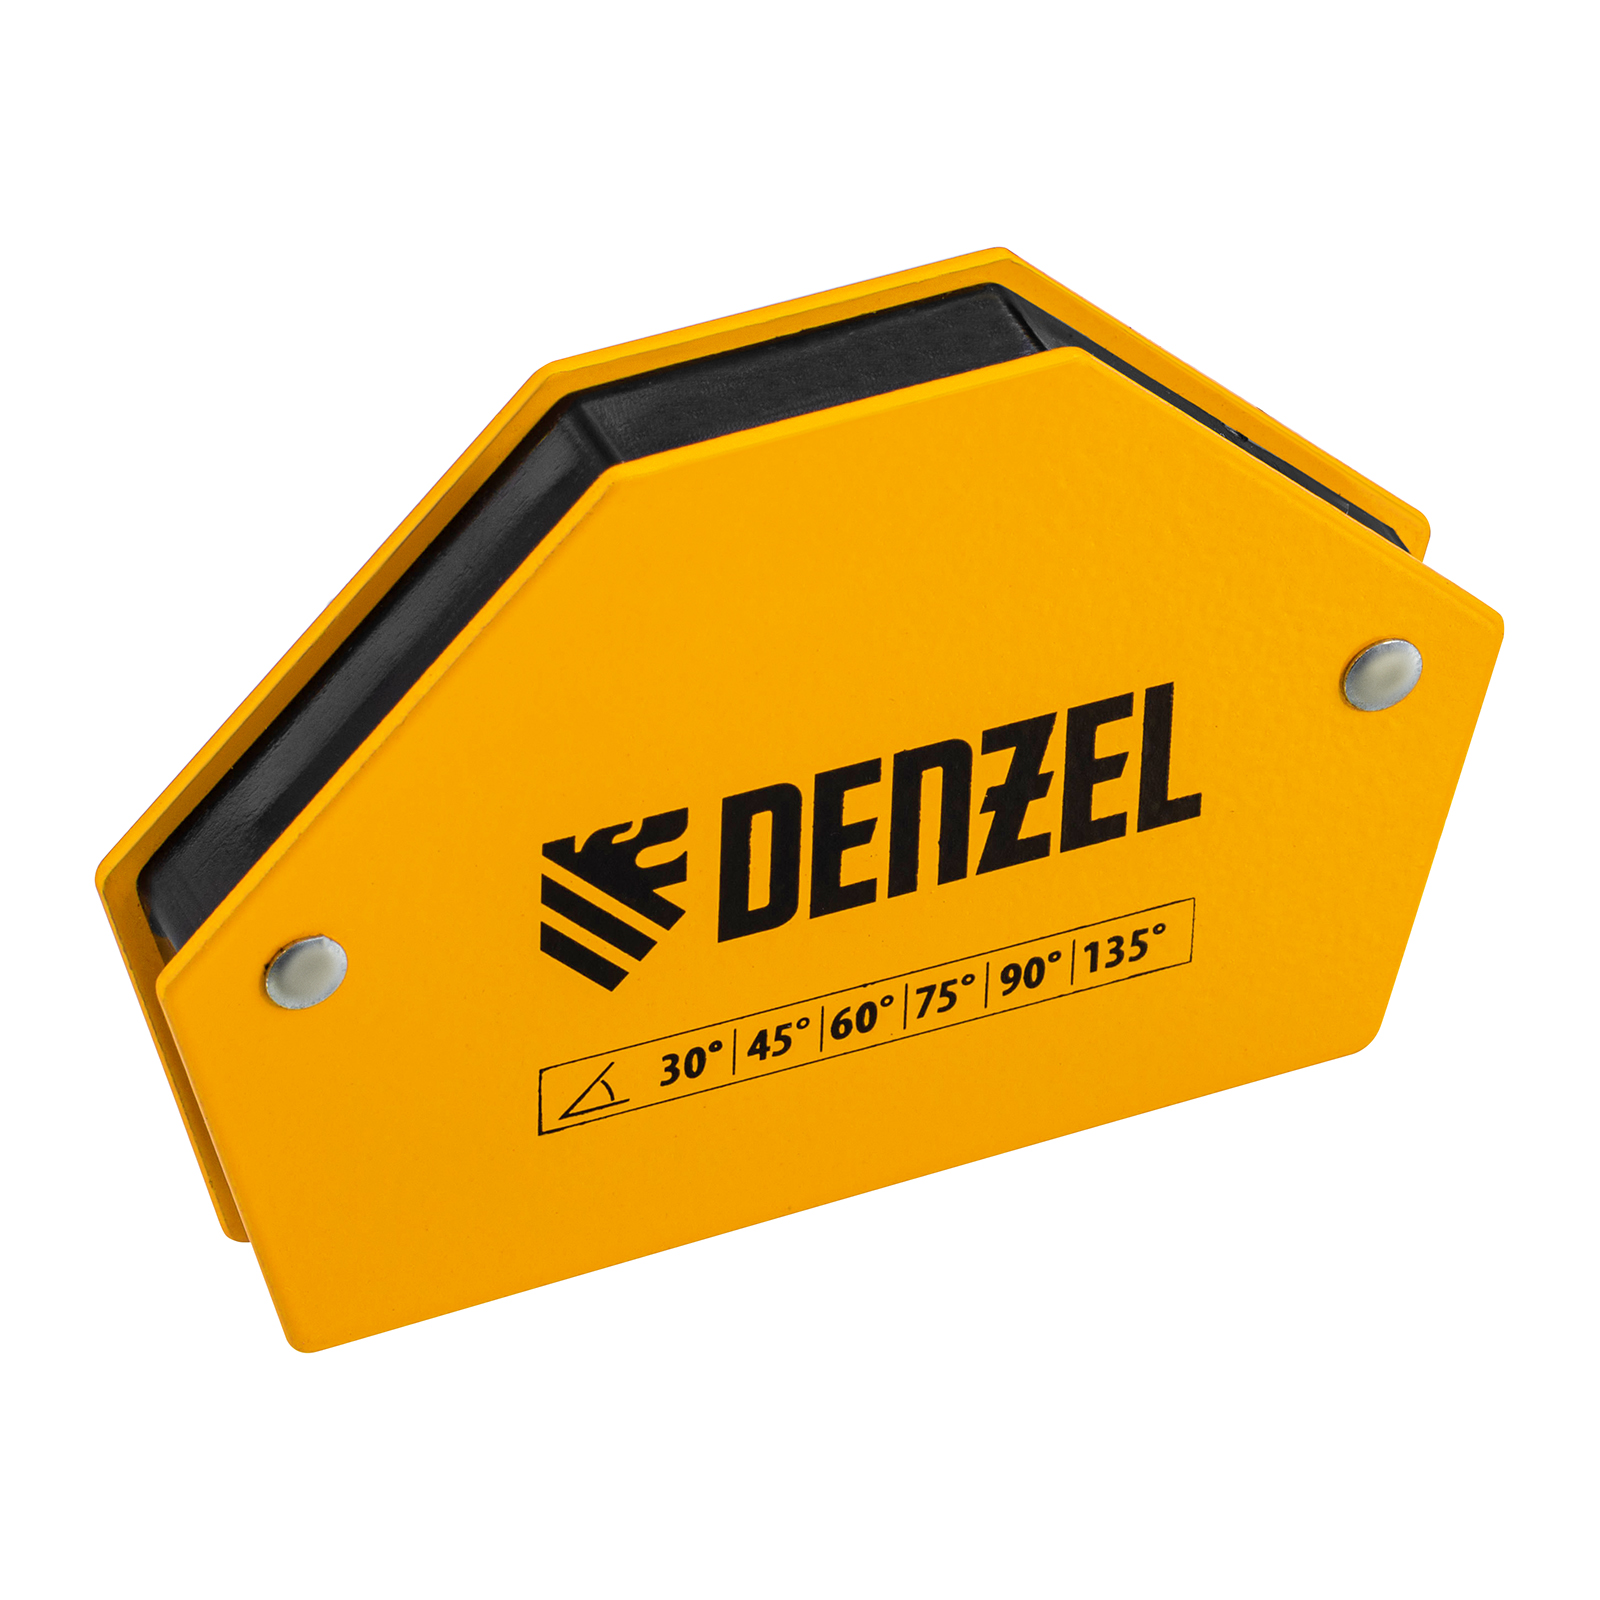 Фиксатор магнитный для сварочных работ DENZEL усилие 25 LB, 30х45х60х75х90х135 град. 97552